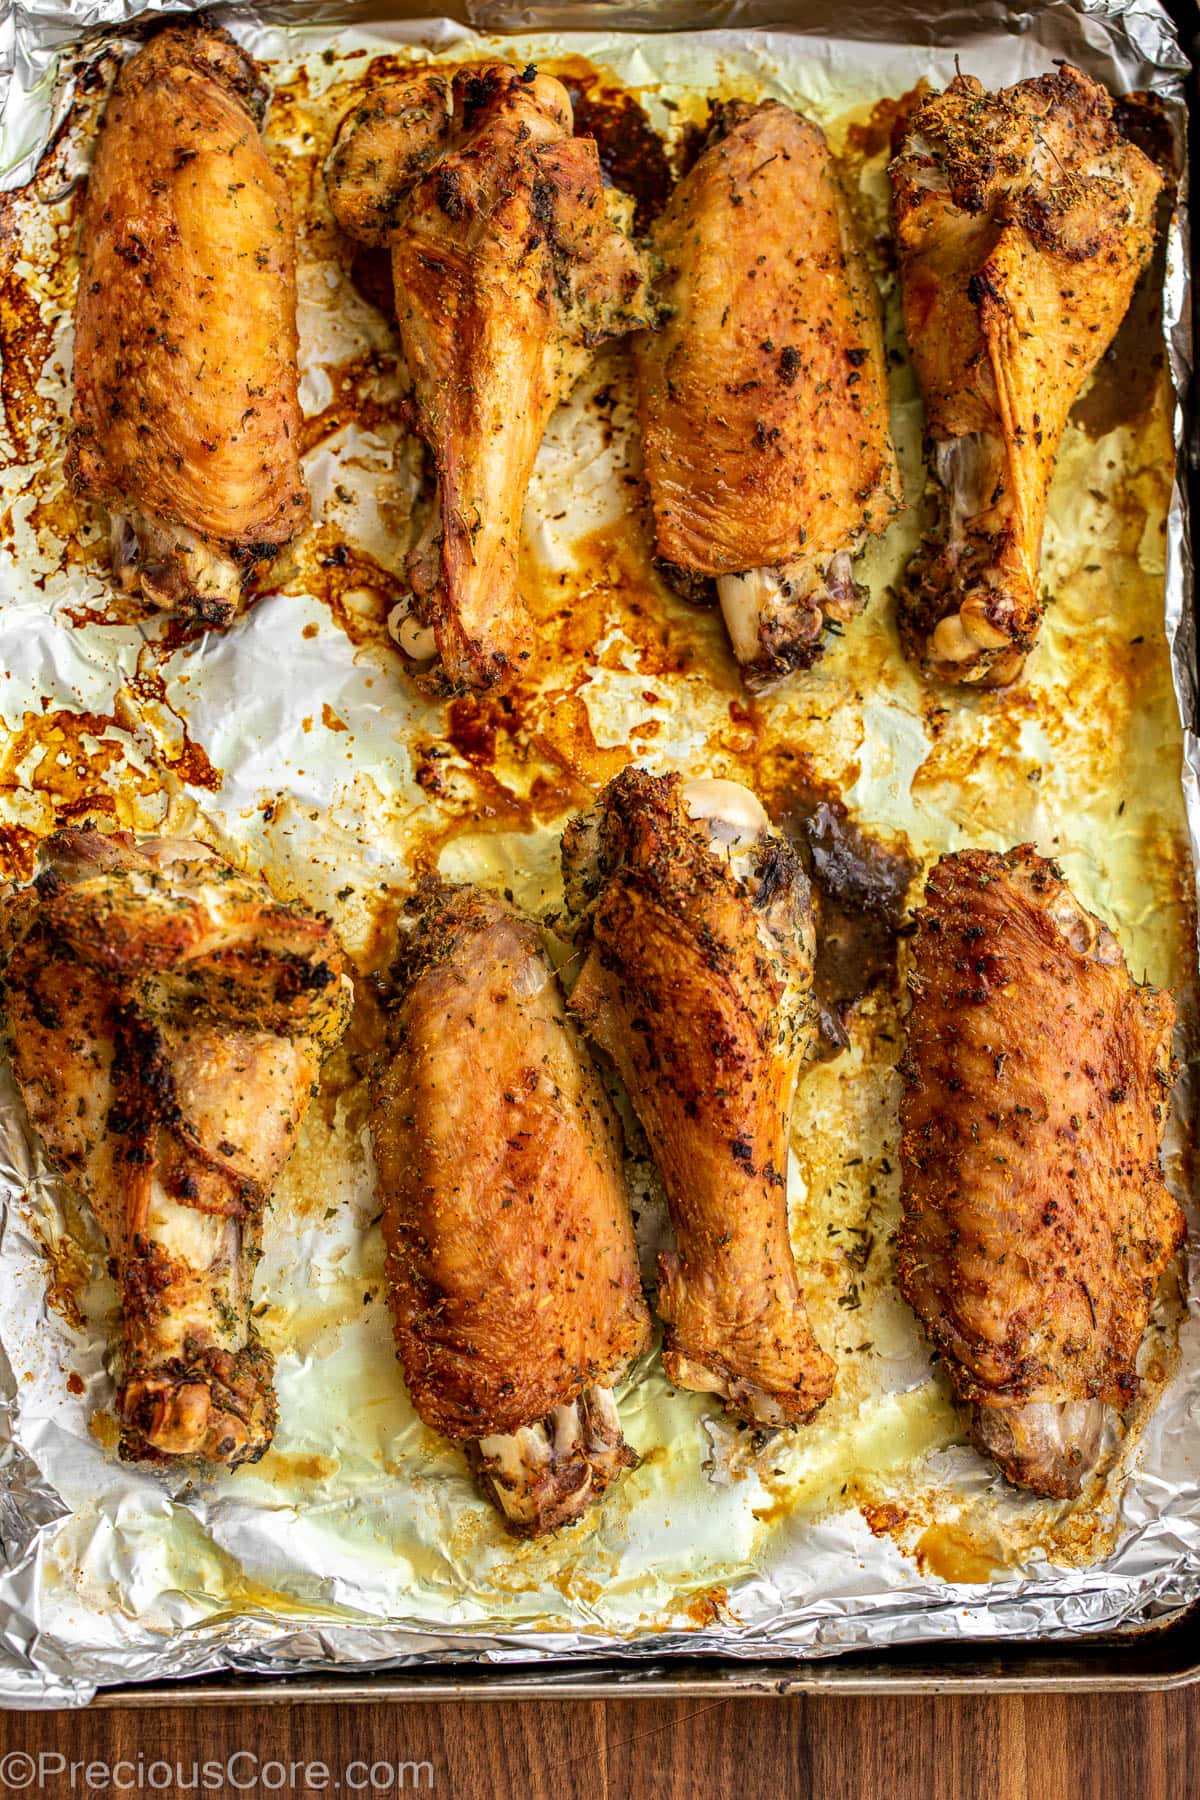 Roasted turkey wings on a baking sheet.